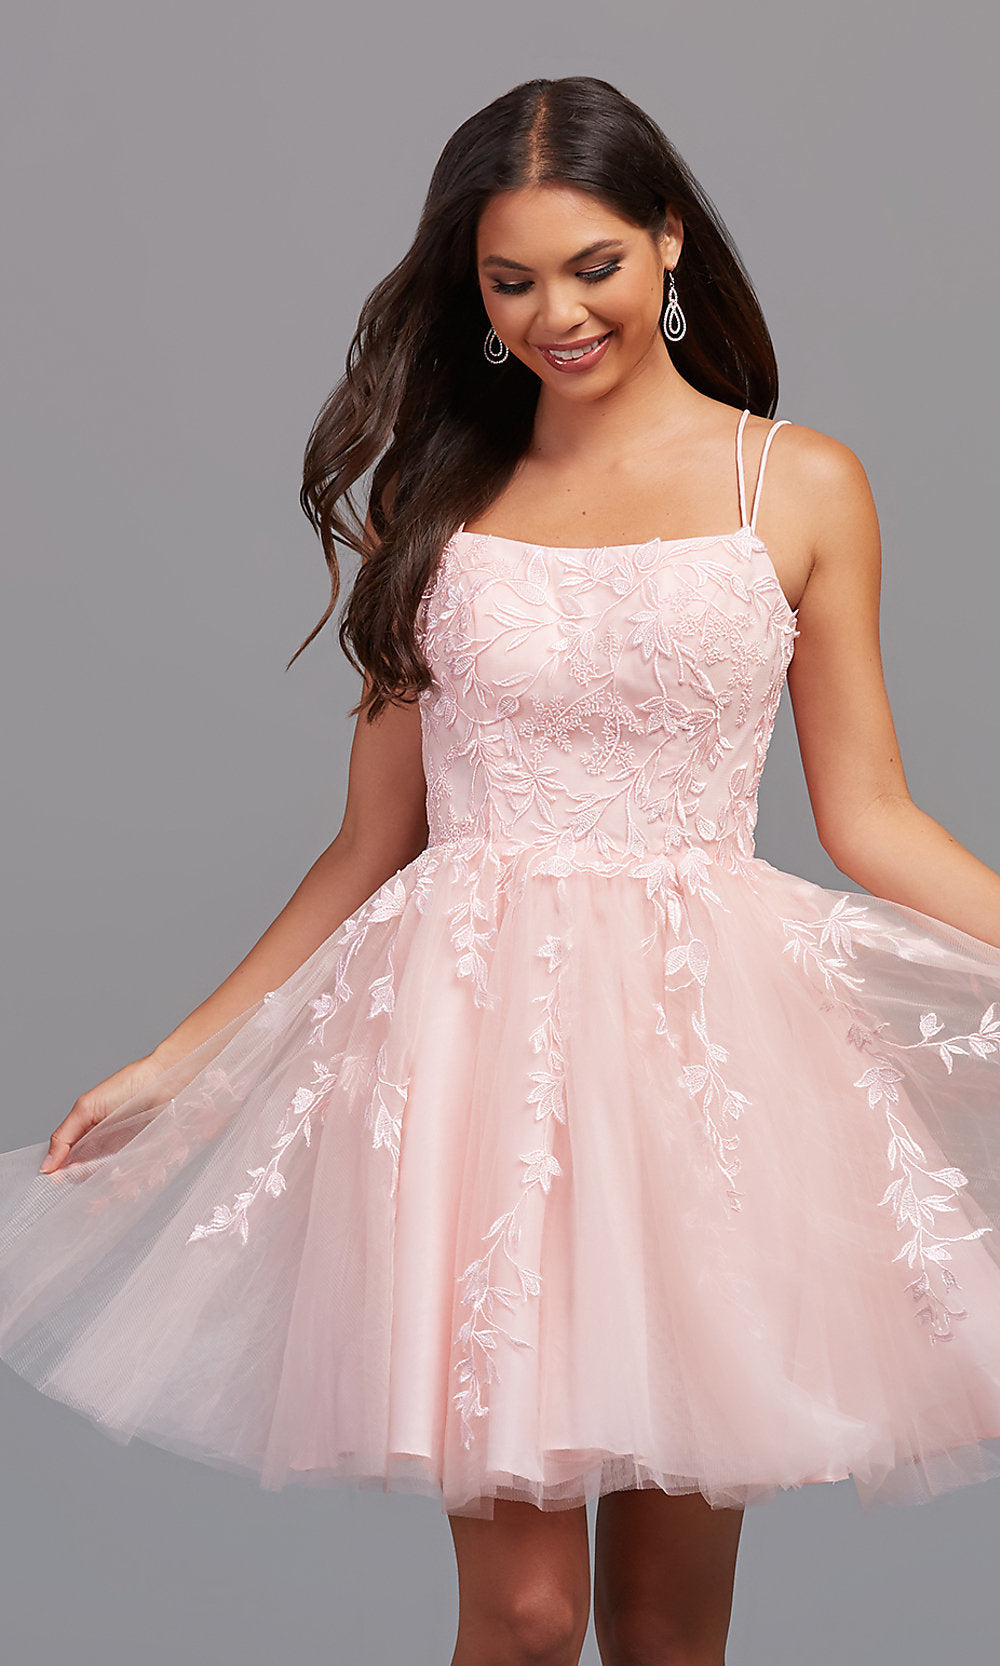 light pink short dress